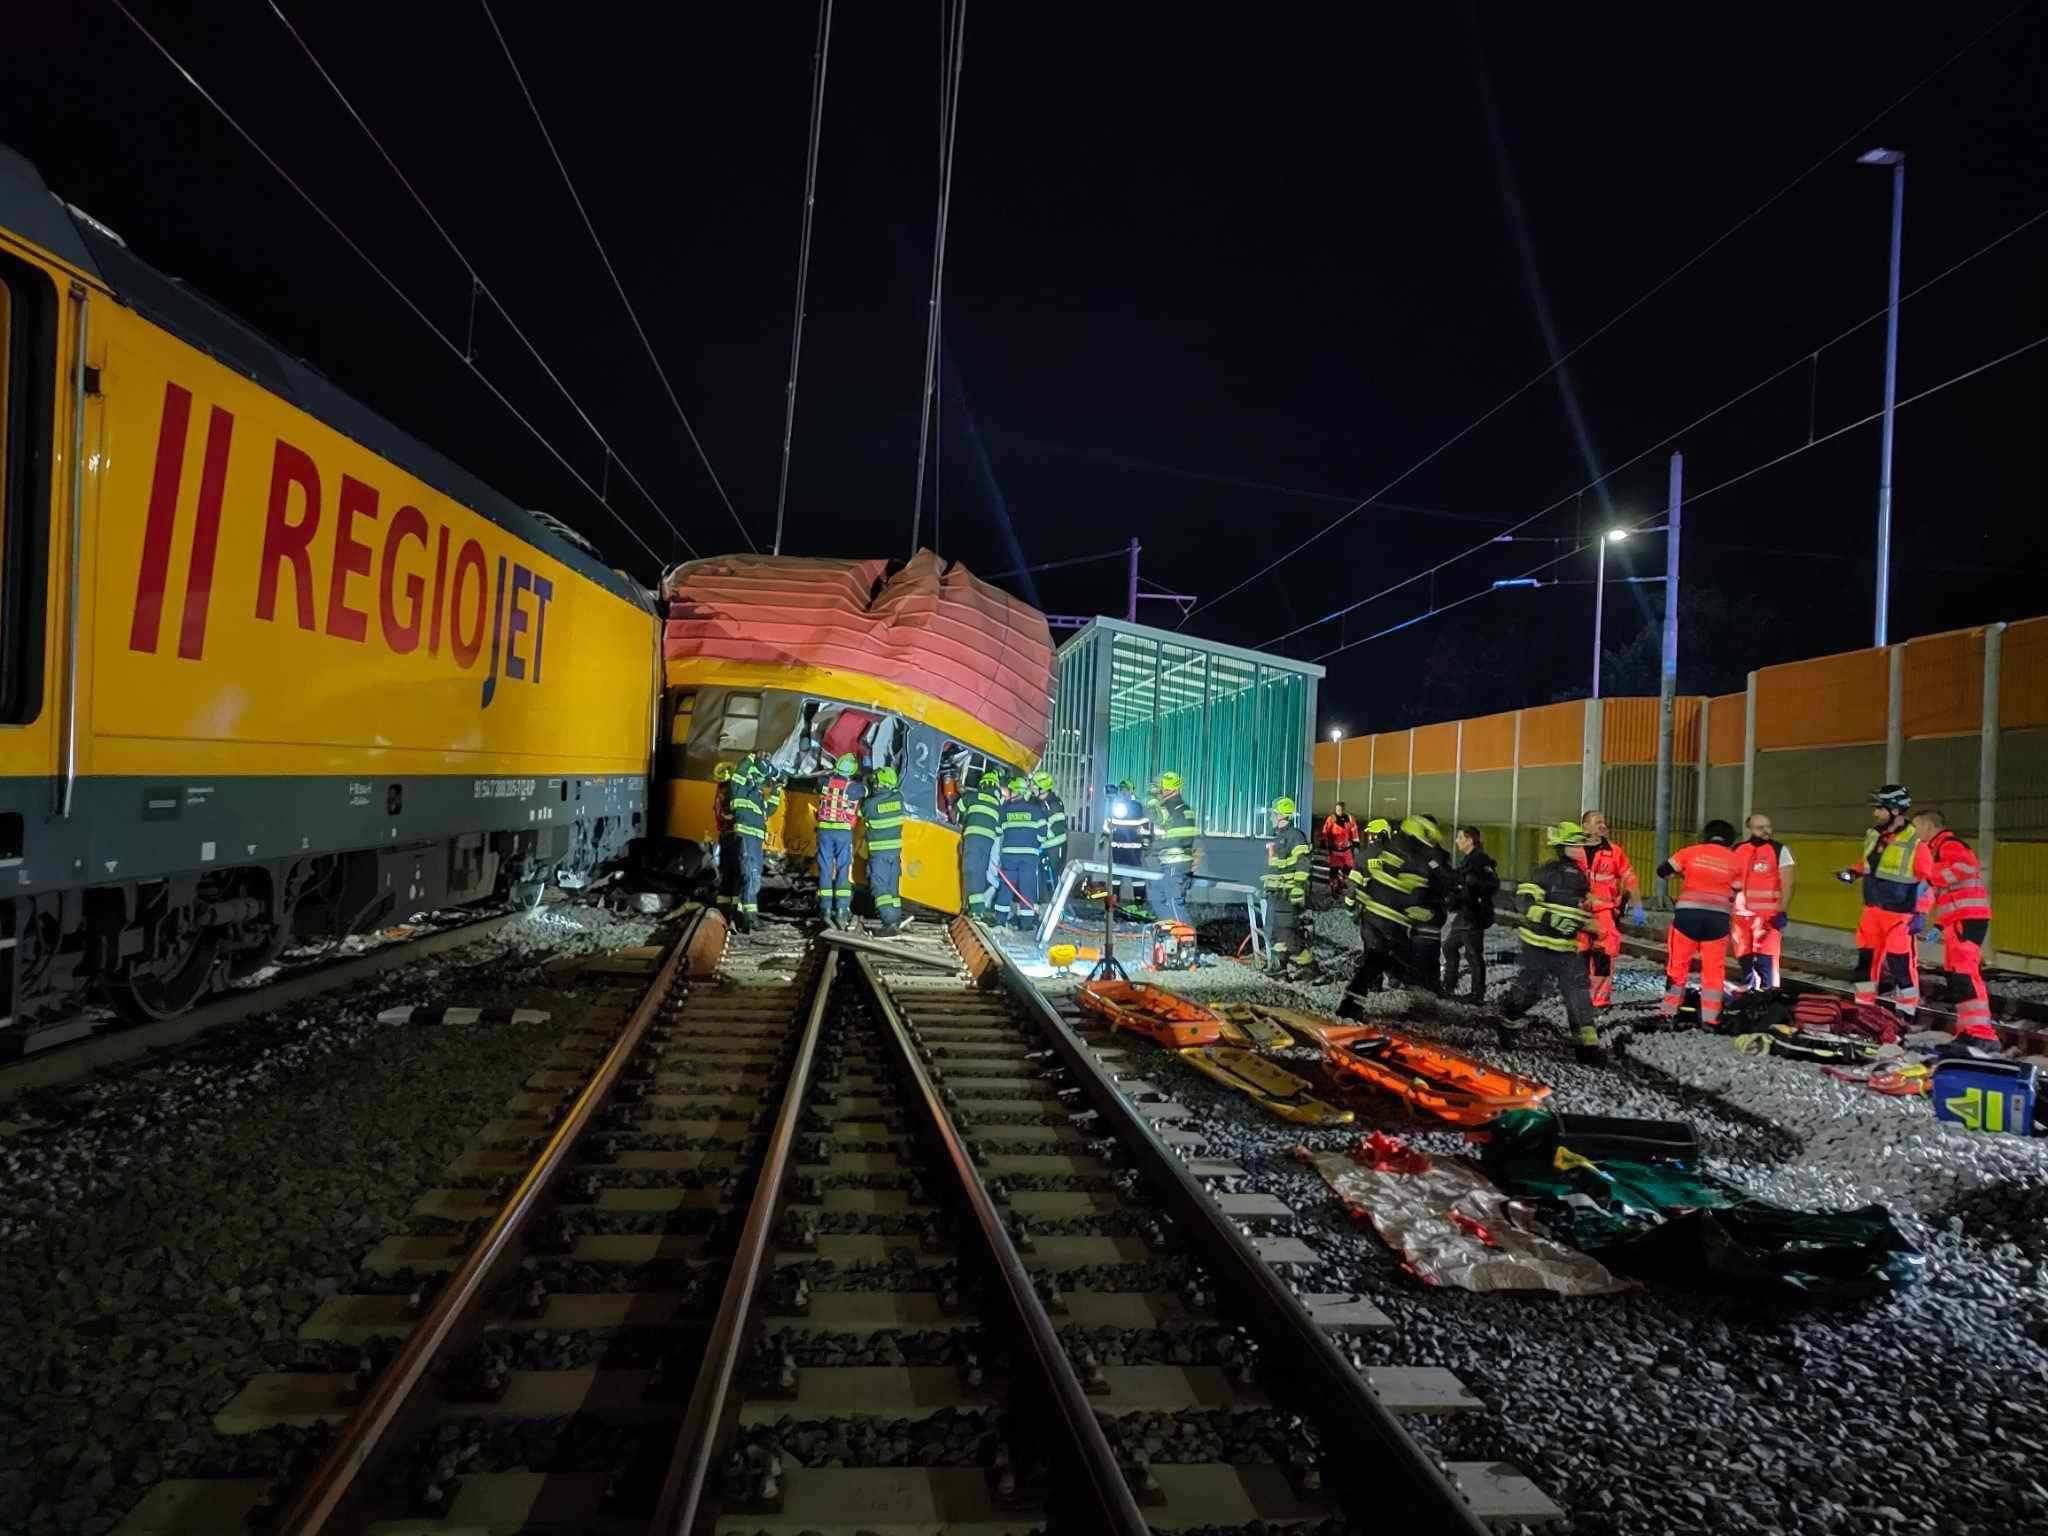 Pardubice állomáson frontálisan ütközött egy tehervonat és egy személyszállító gyorsvonat. A balesetben négyen meghaltak (képek forrása: Der Eisenbahner Facebook-oldal)